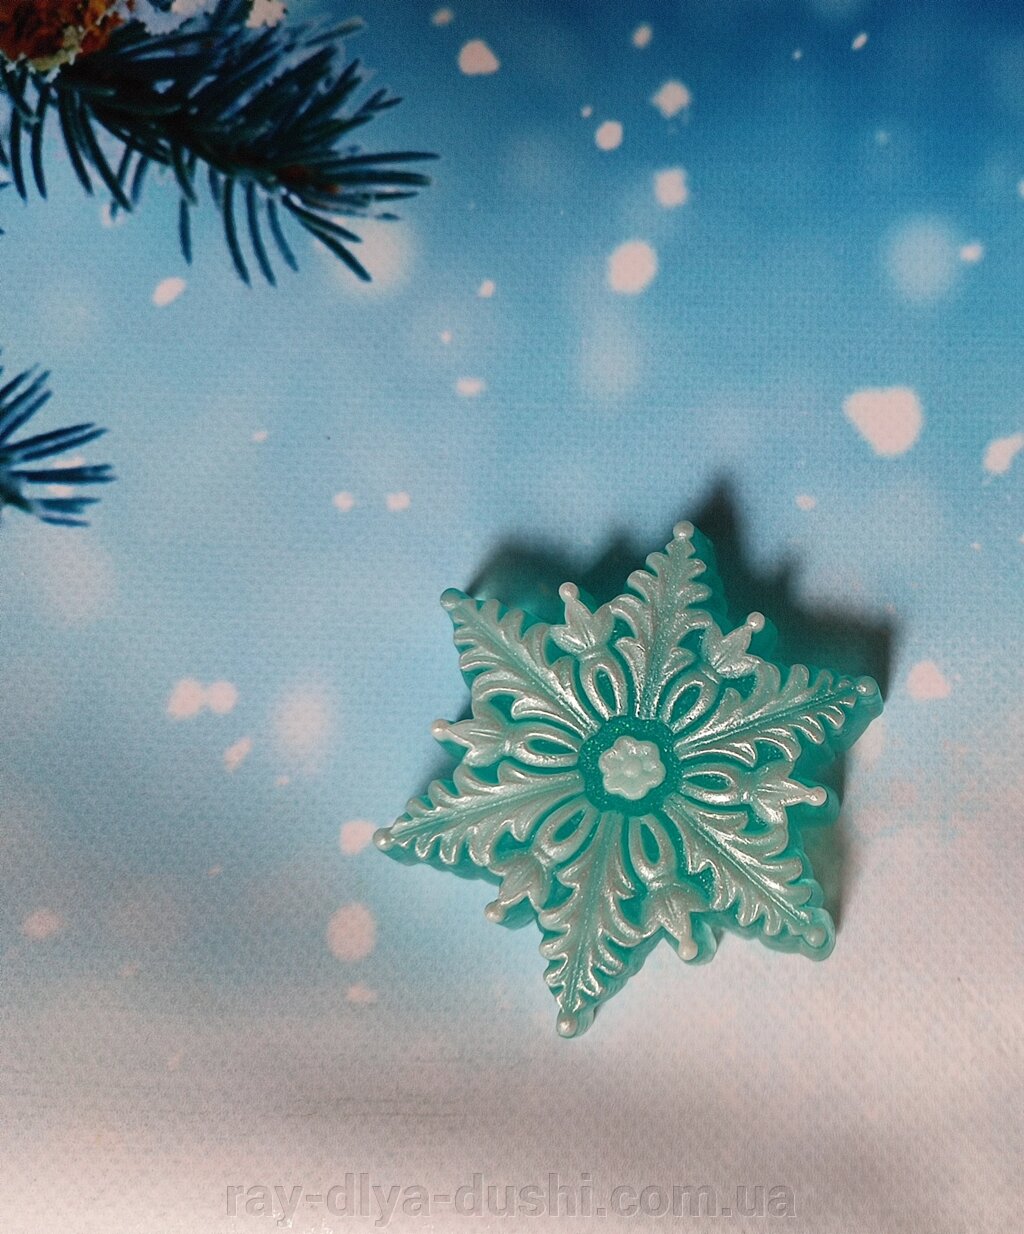 Мило "Сніжинка" від компанії Рай для душі - фото 1